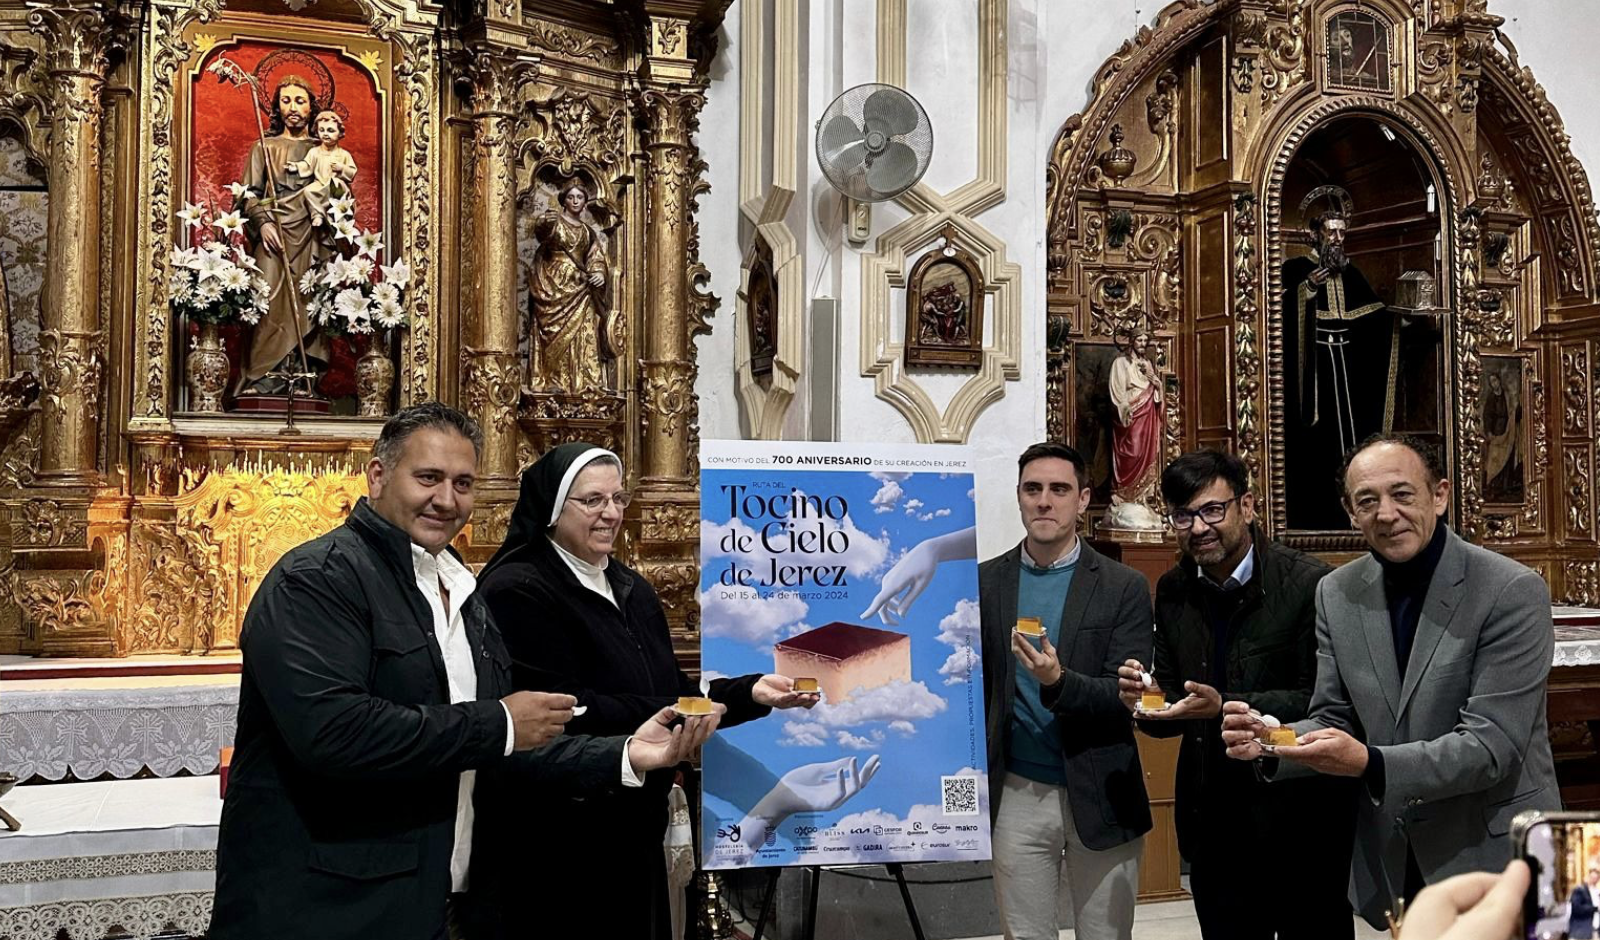 700 años del tocino de cielo de Jerez: una ruta para celebrar esta efeméride. Imagen de la presentación del cartel. 